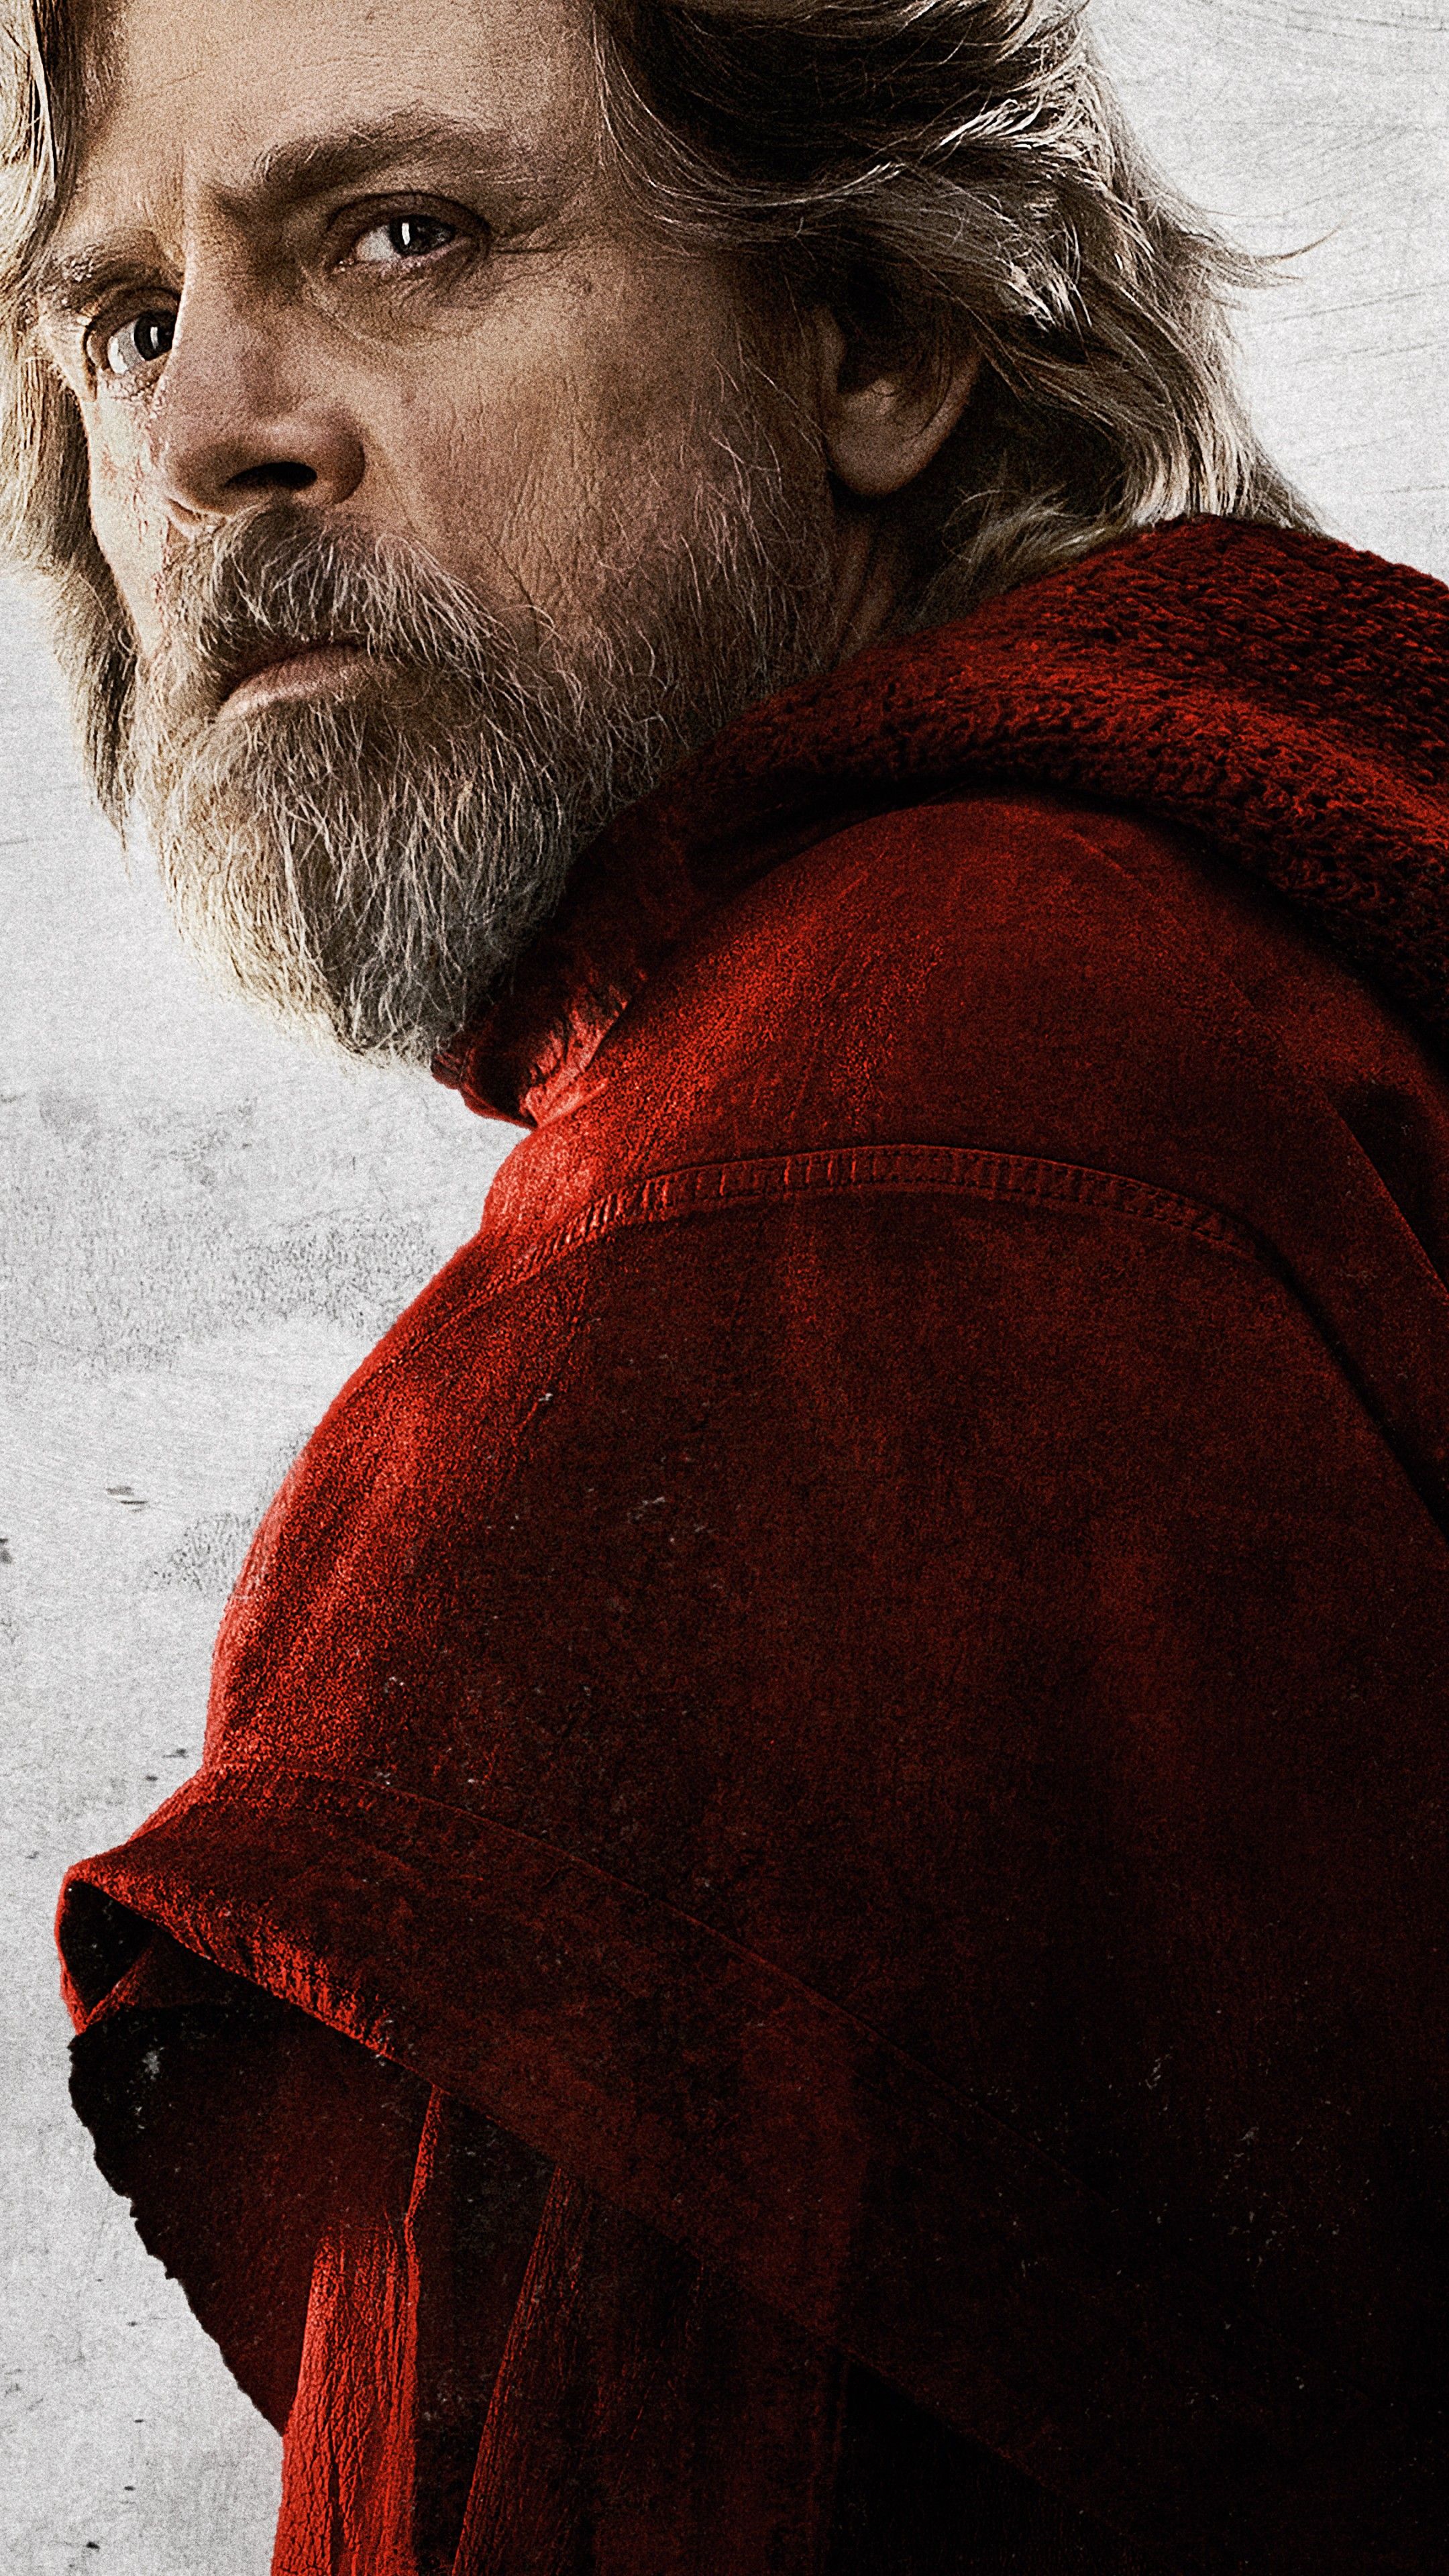 Wallpaper Star Wars: The Last Jedi, Mark Hamill, 8k, Movies